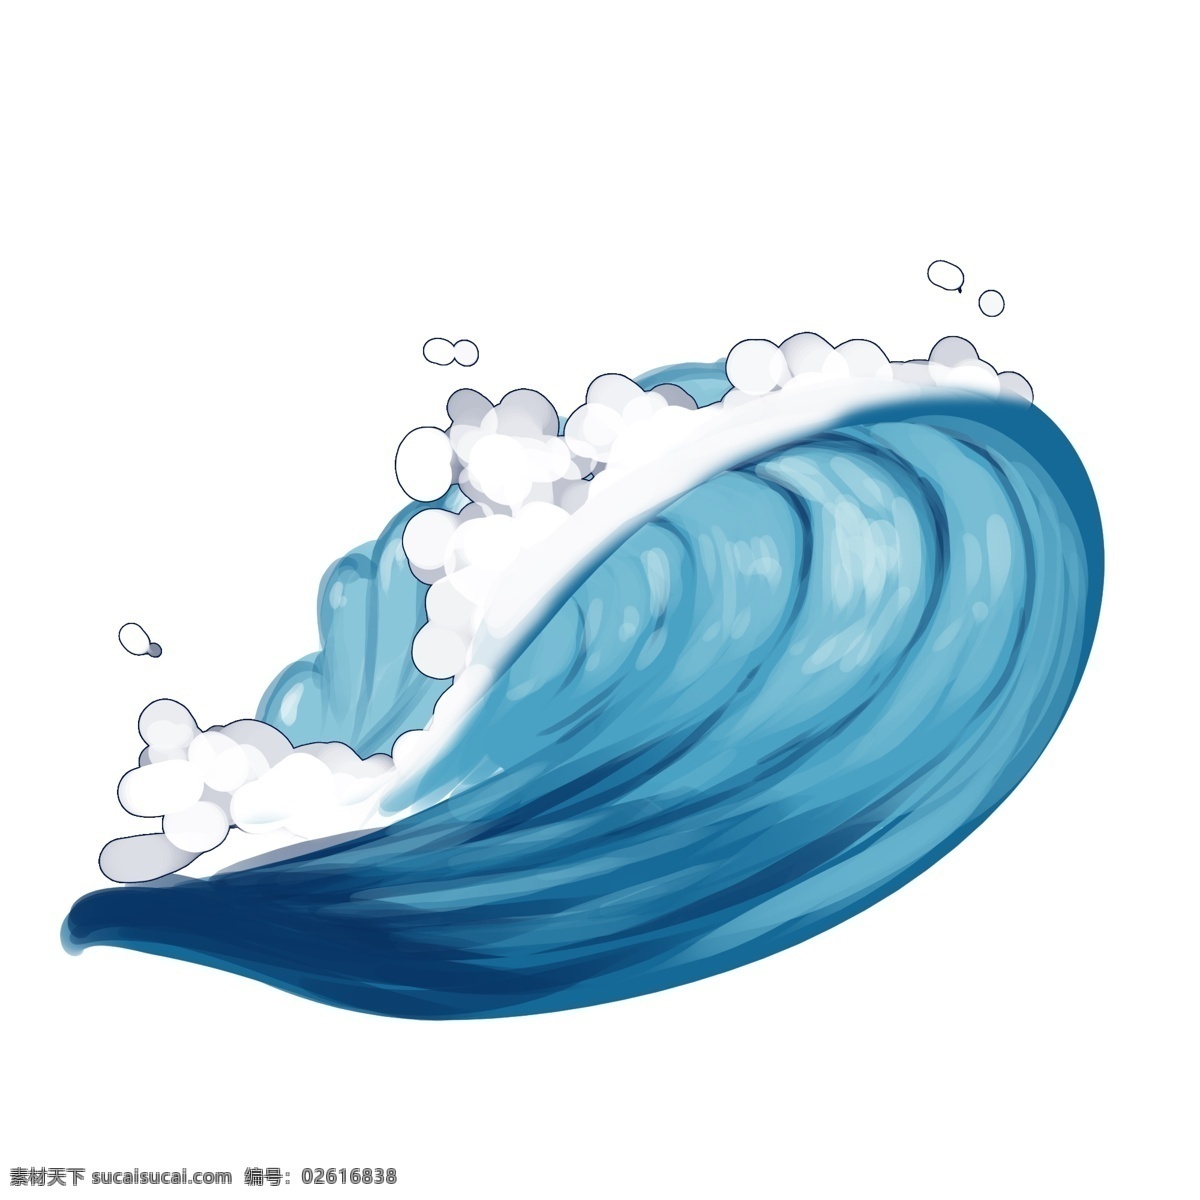 朵朵 蓝色 浪花 轻轻 拍打 海浪 天蓝色 大海 水流 唯美 装饰 贴画 卡通 免扣 一朵朵 水珠 水滴